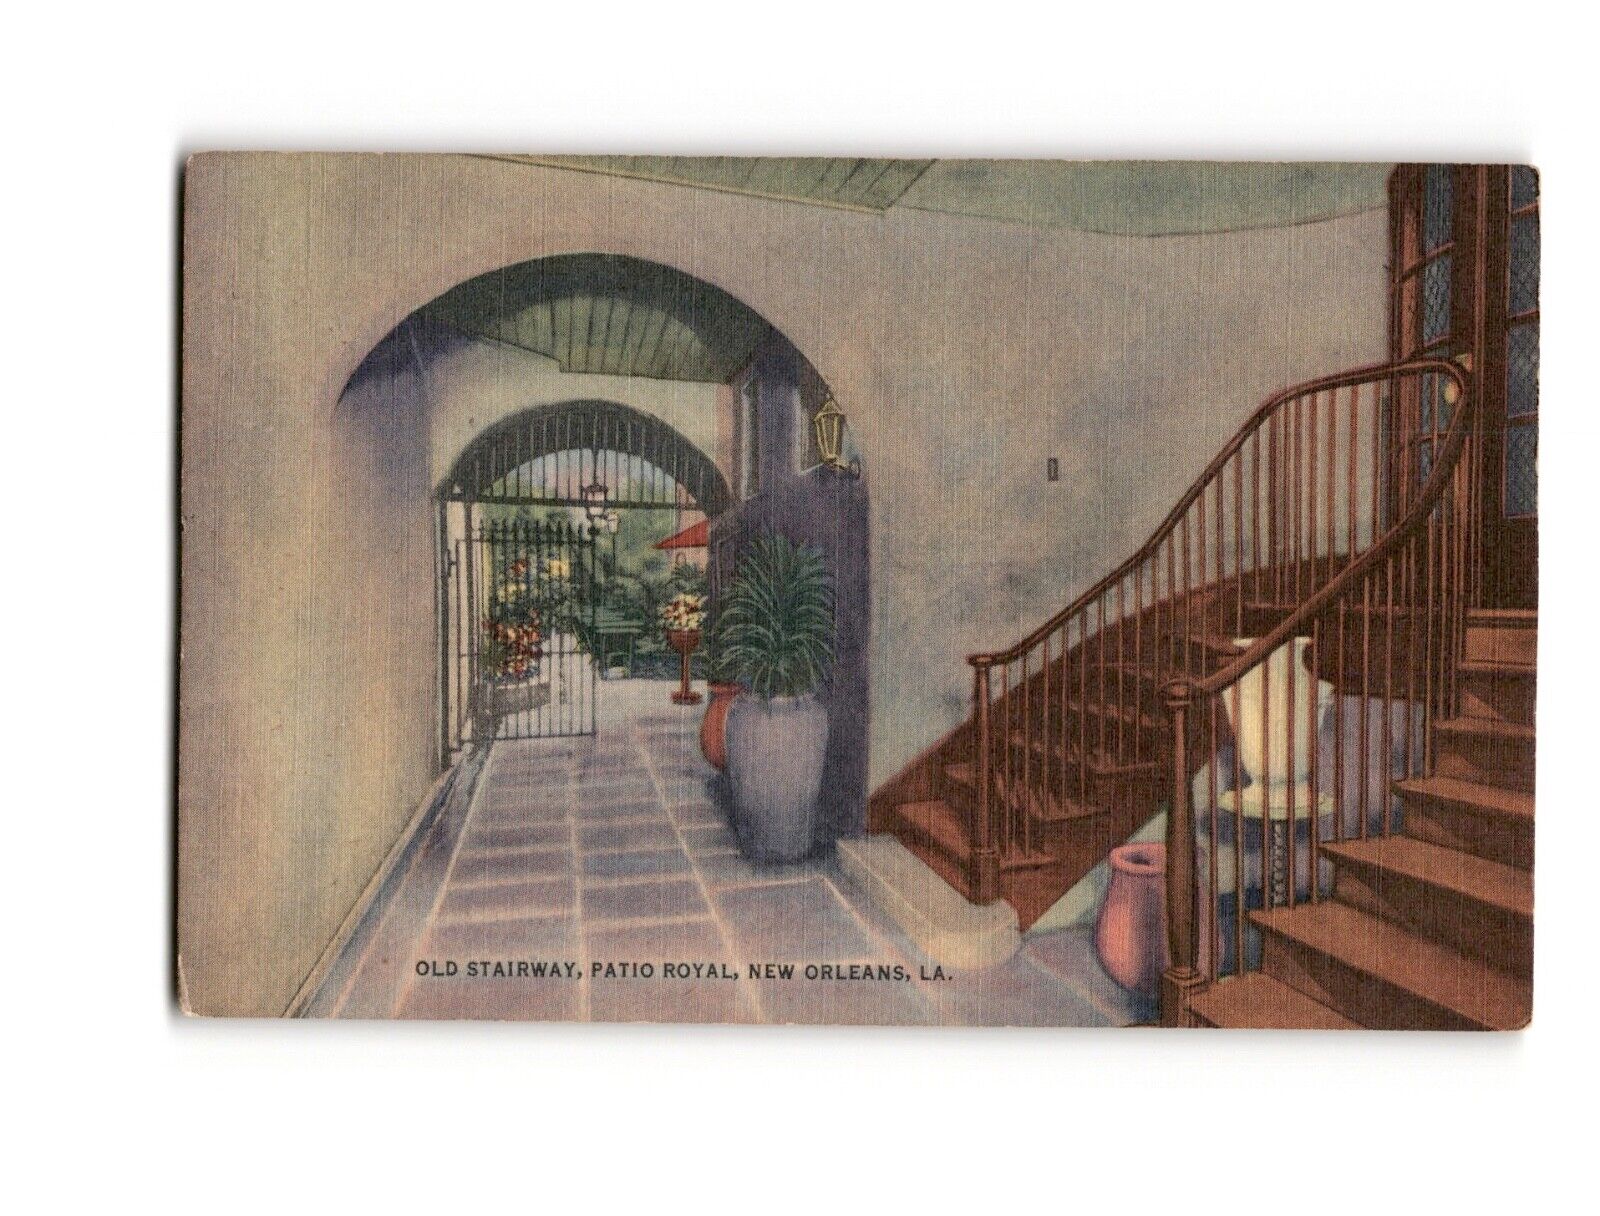 Vintage New Orleans Postcard - Old Stairway, Patio Royal, Historic Landmark